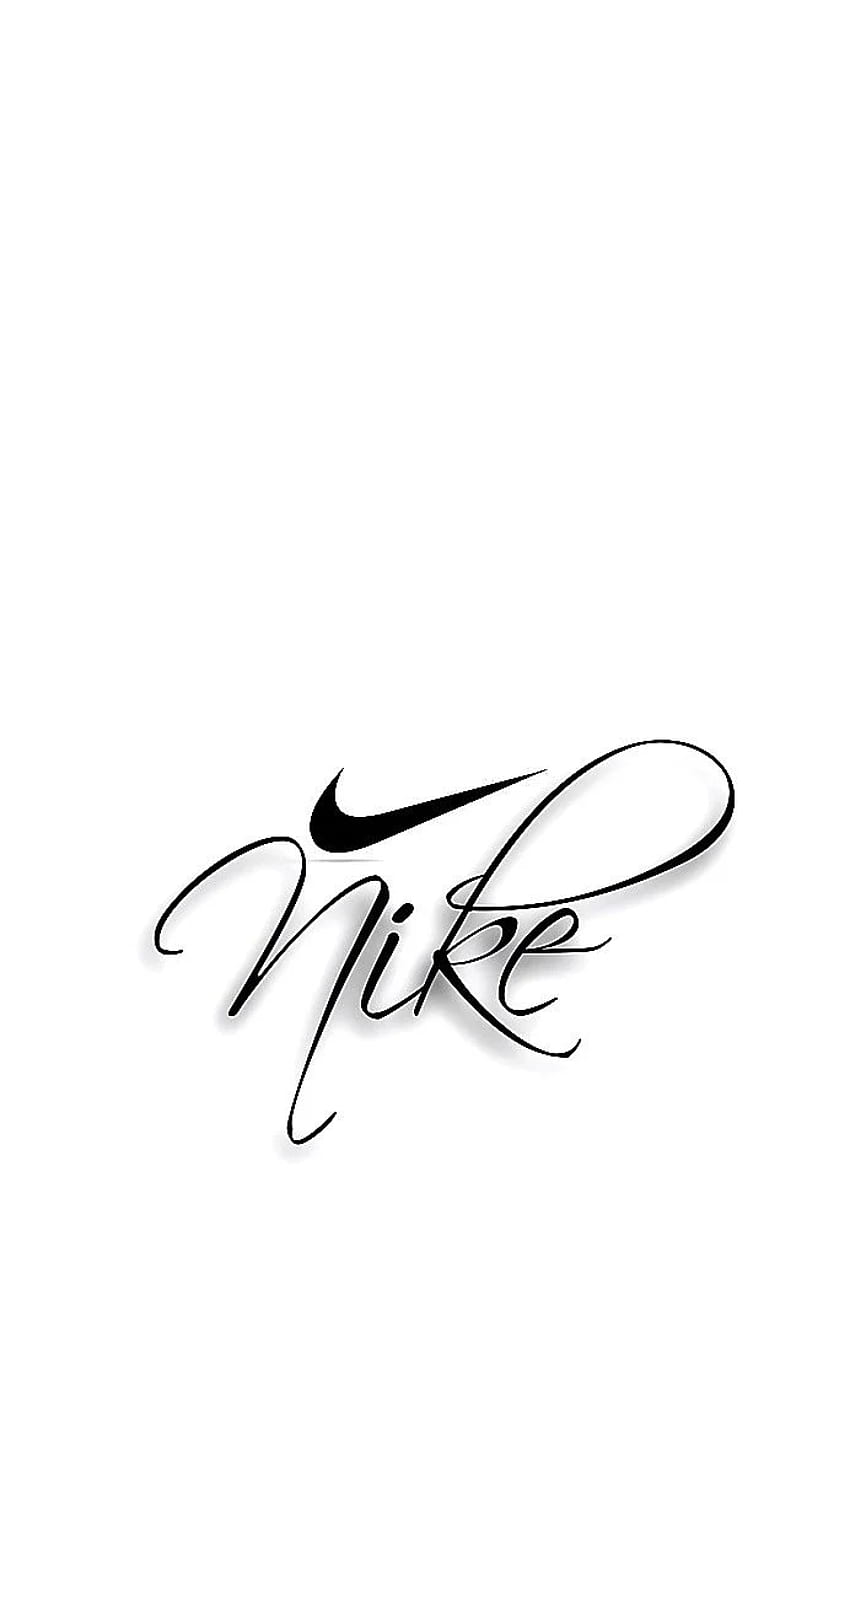 Nền trắng Nike mang lại sự đơn giản và tinh tế cho ảnh của bạn. Hãy thưởng thức hình ảnh này với thiết kế một màu, thao tác chỉnh sửa không lành mạnh như thế này làm nổi bật và giúp sản phẩm của bạn được quan tâm hơn.